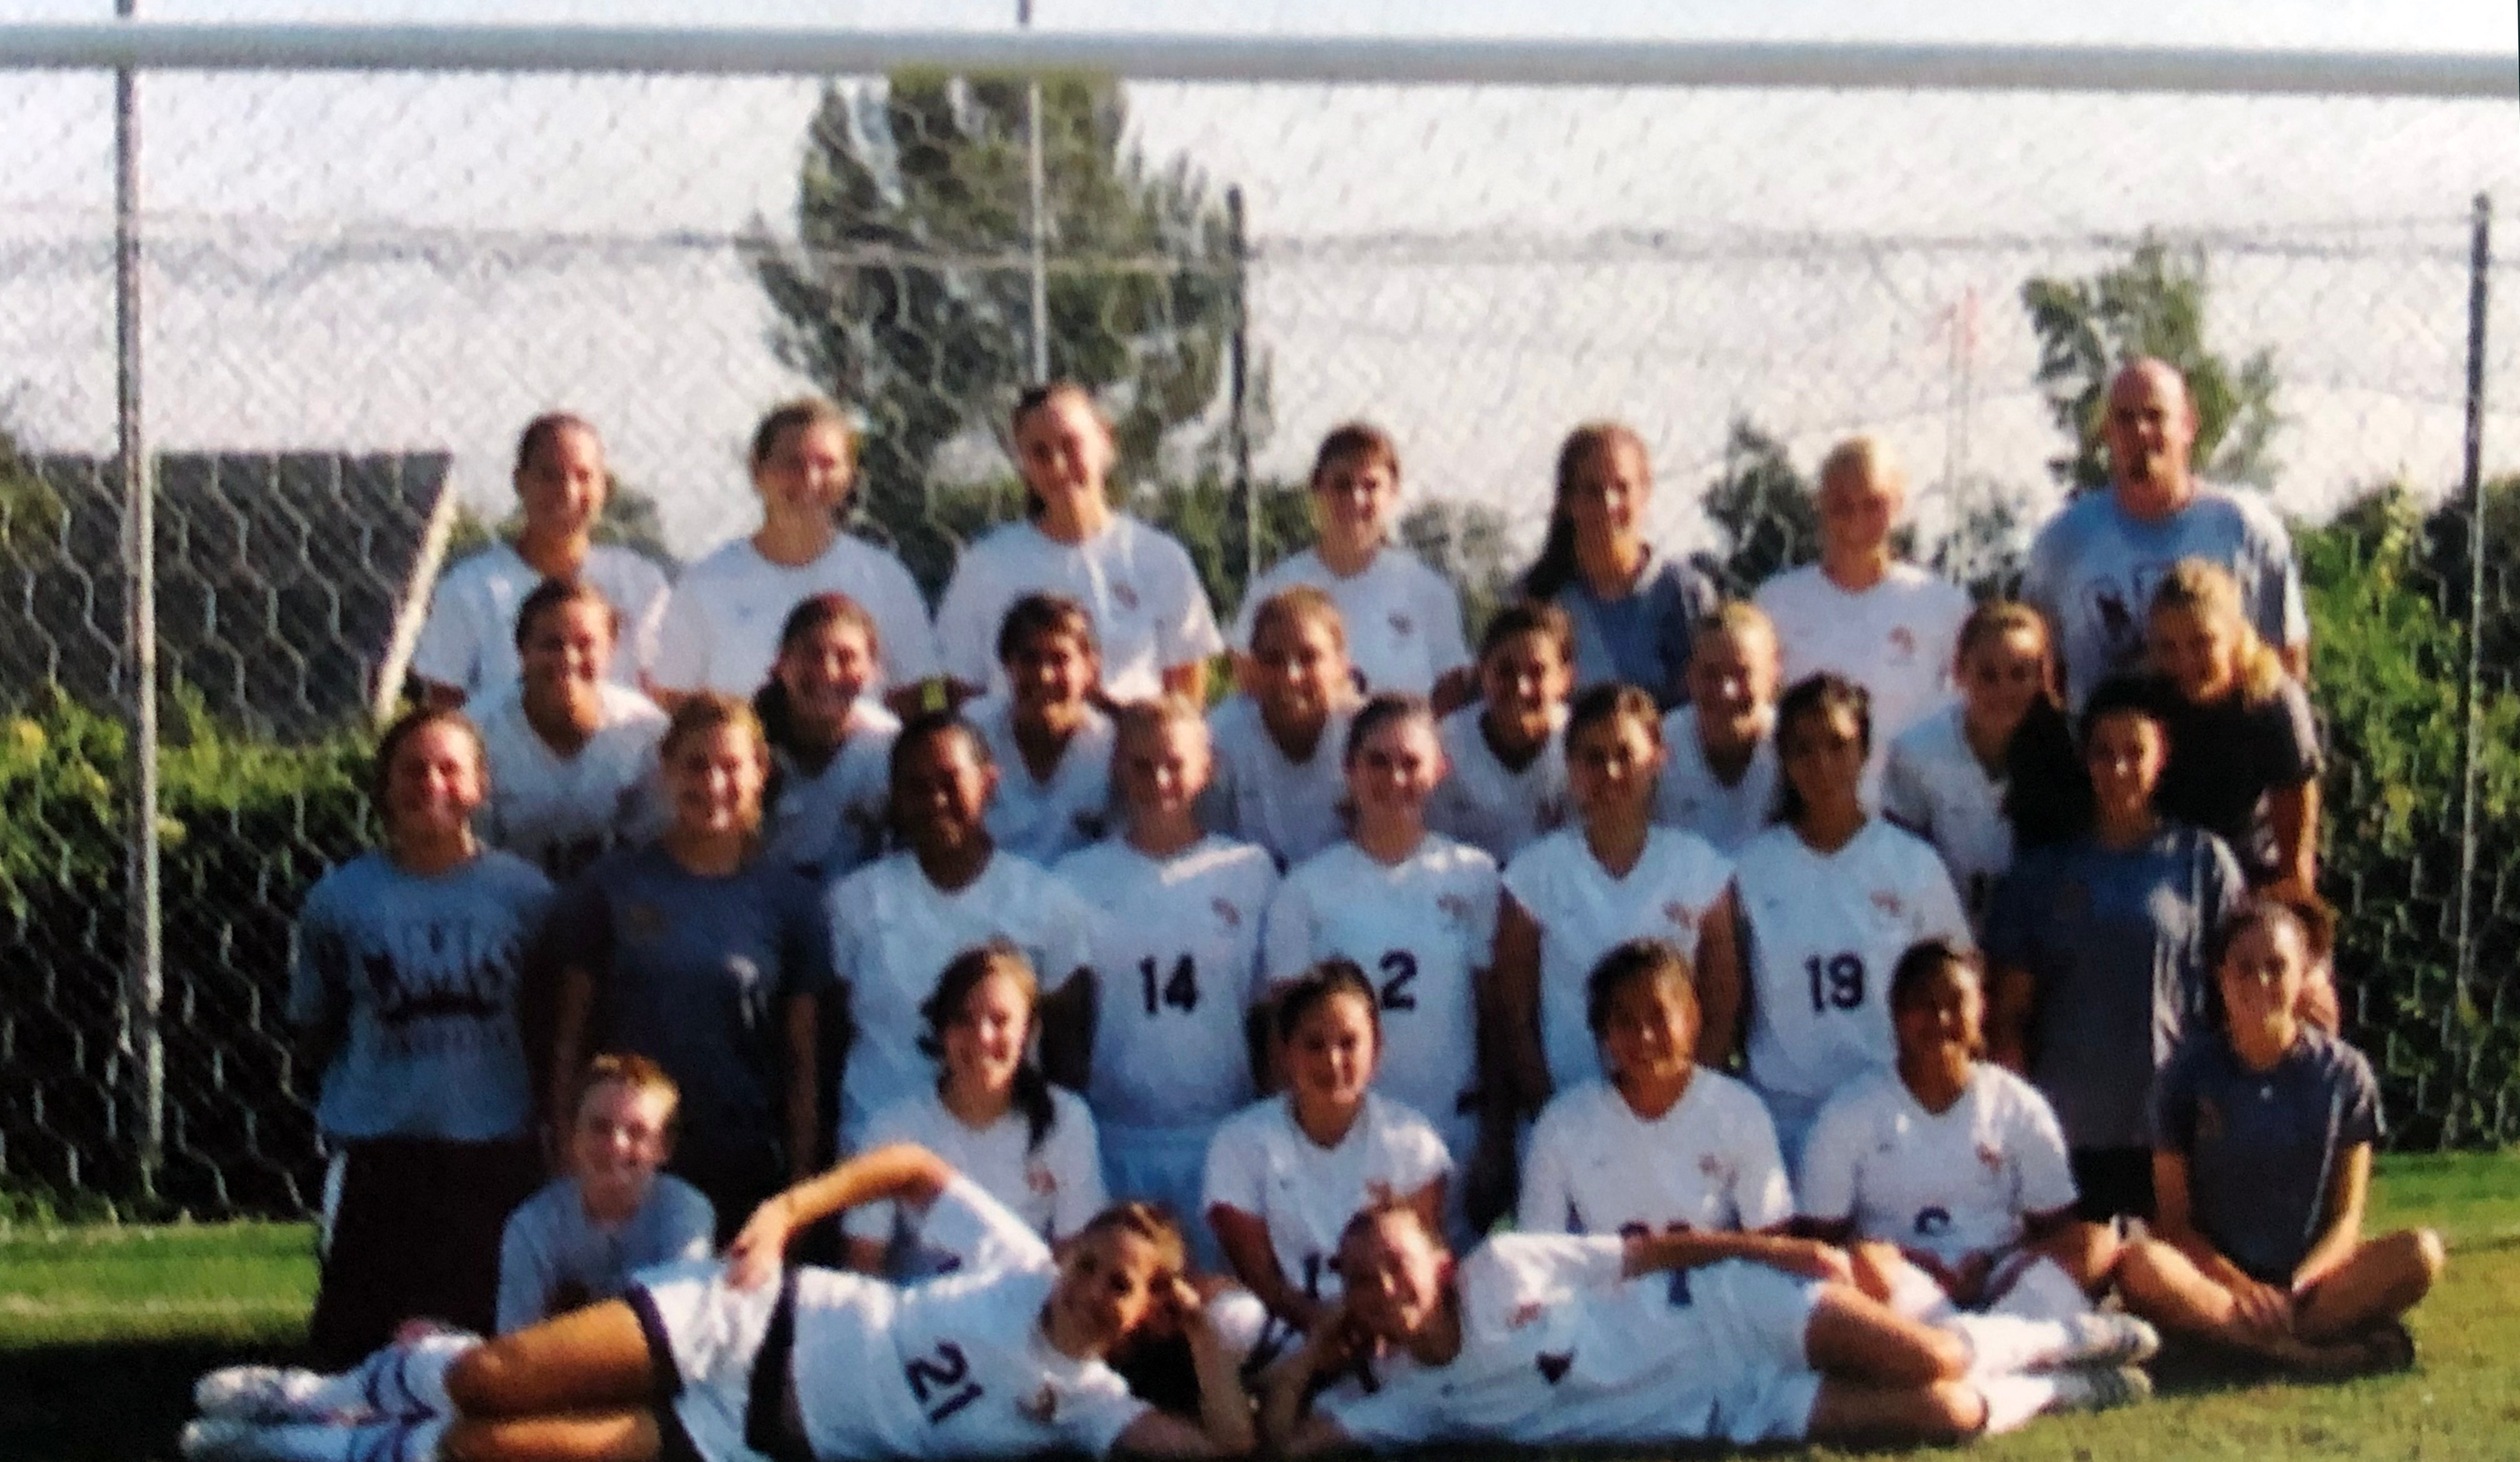 The 2008 women's soccer team photo